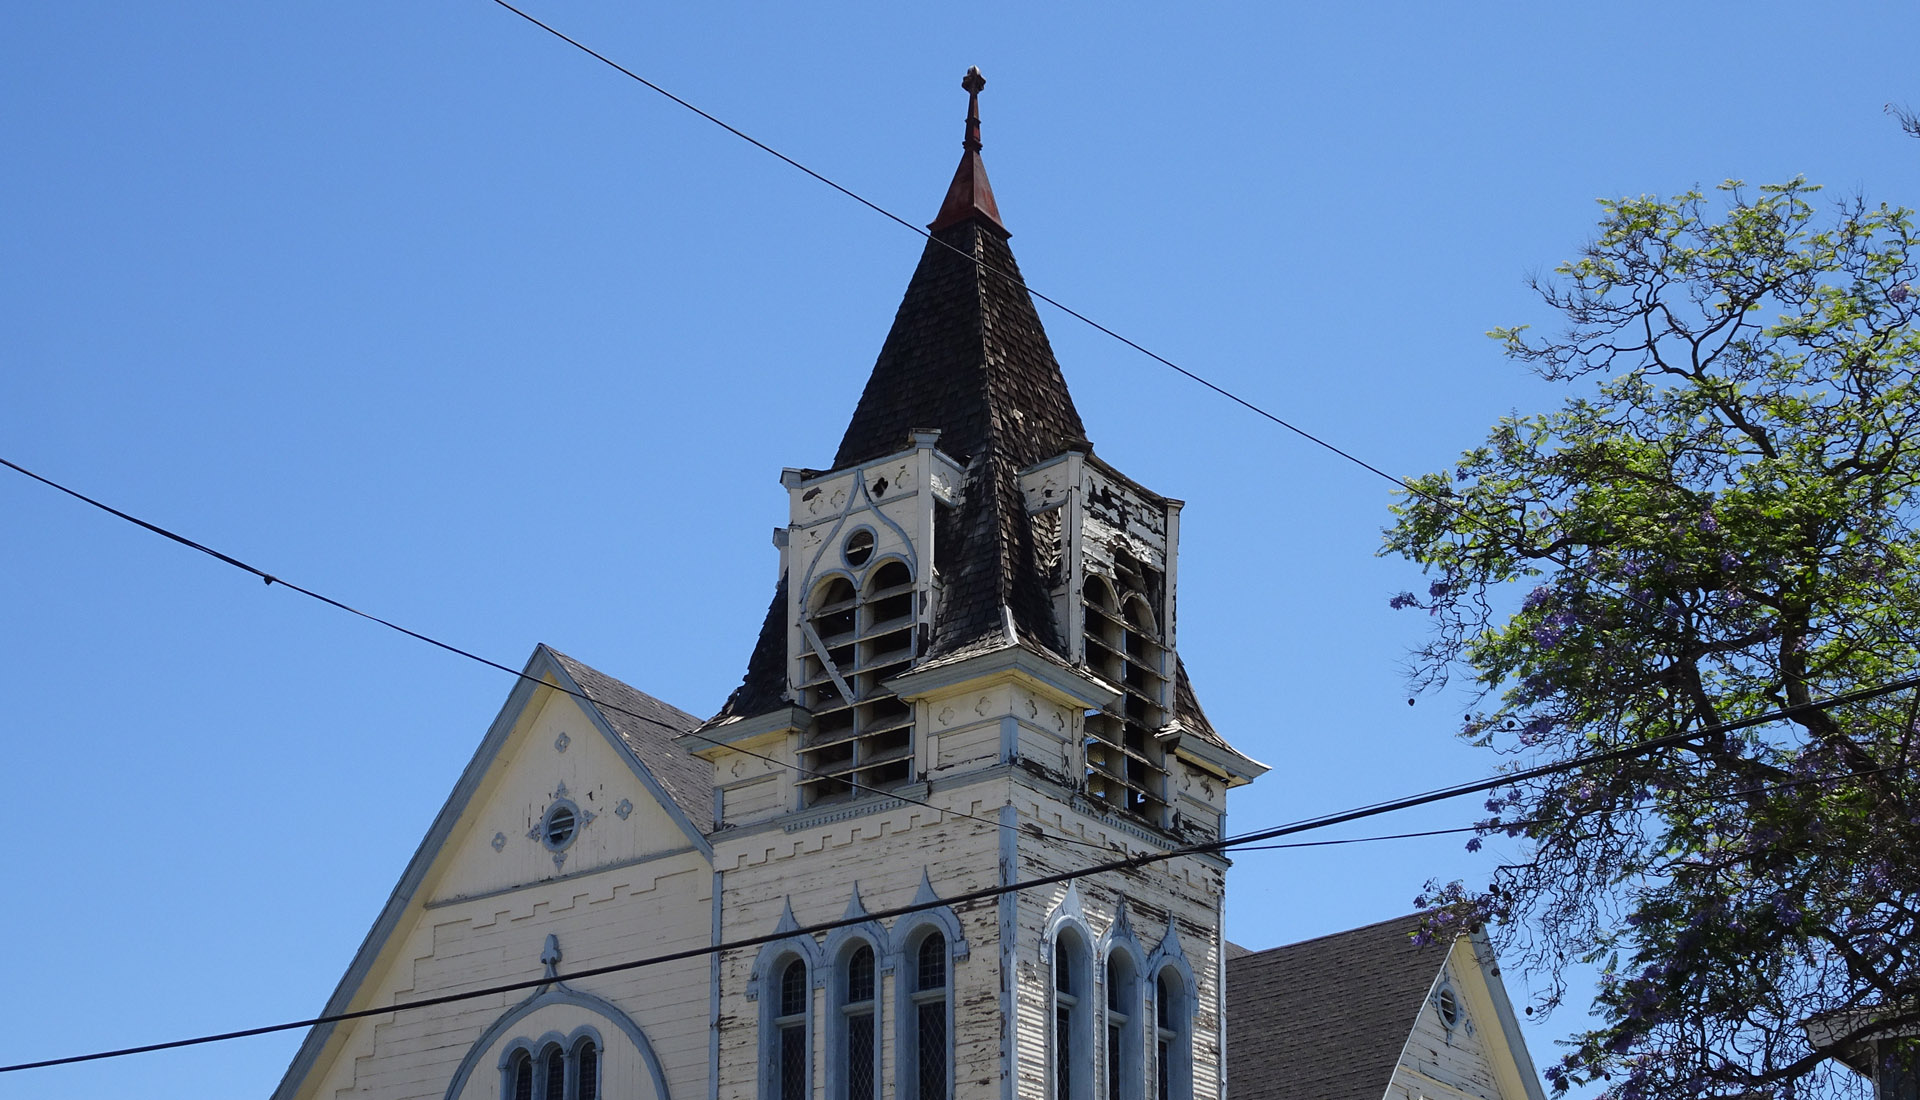 Boyle Heights Presbyterian Church